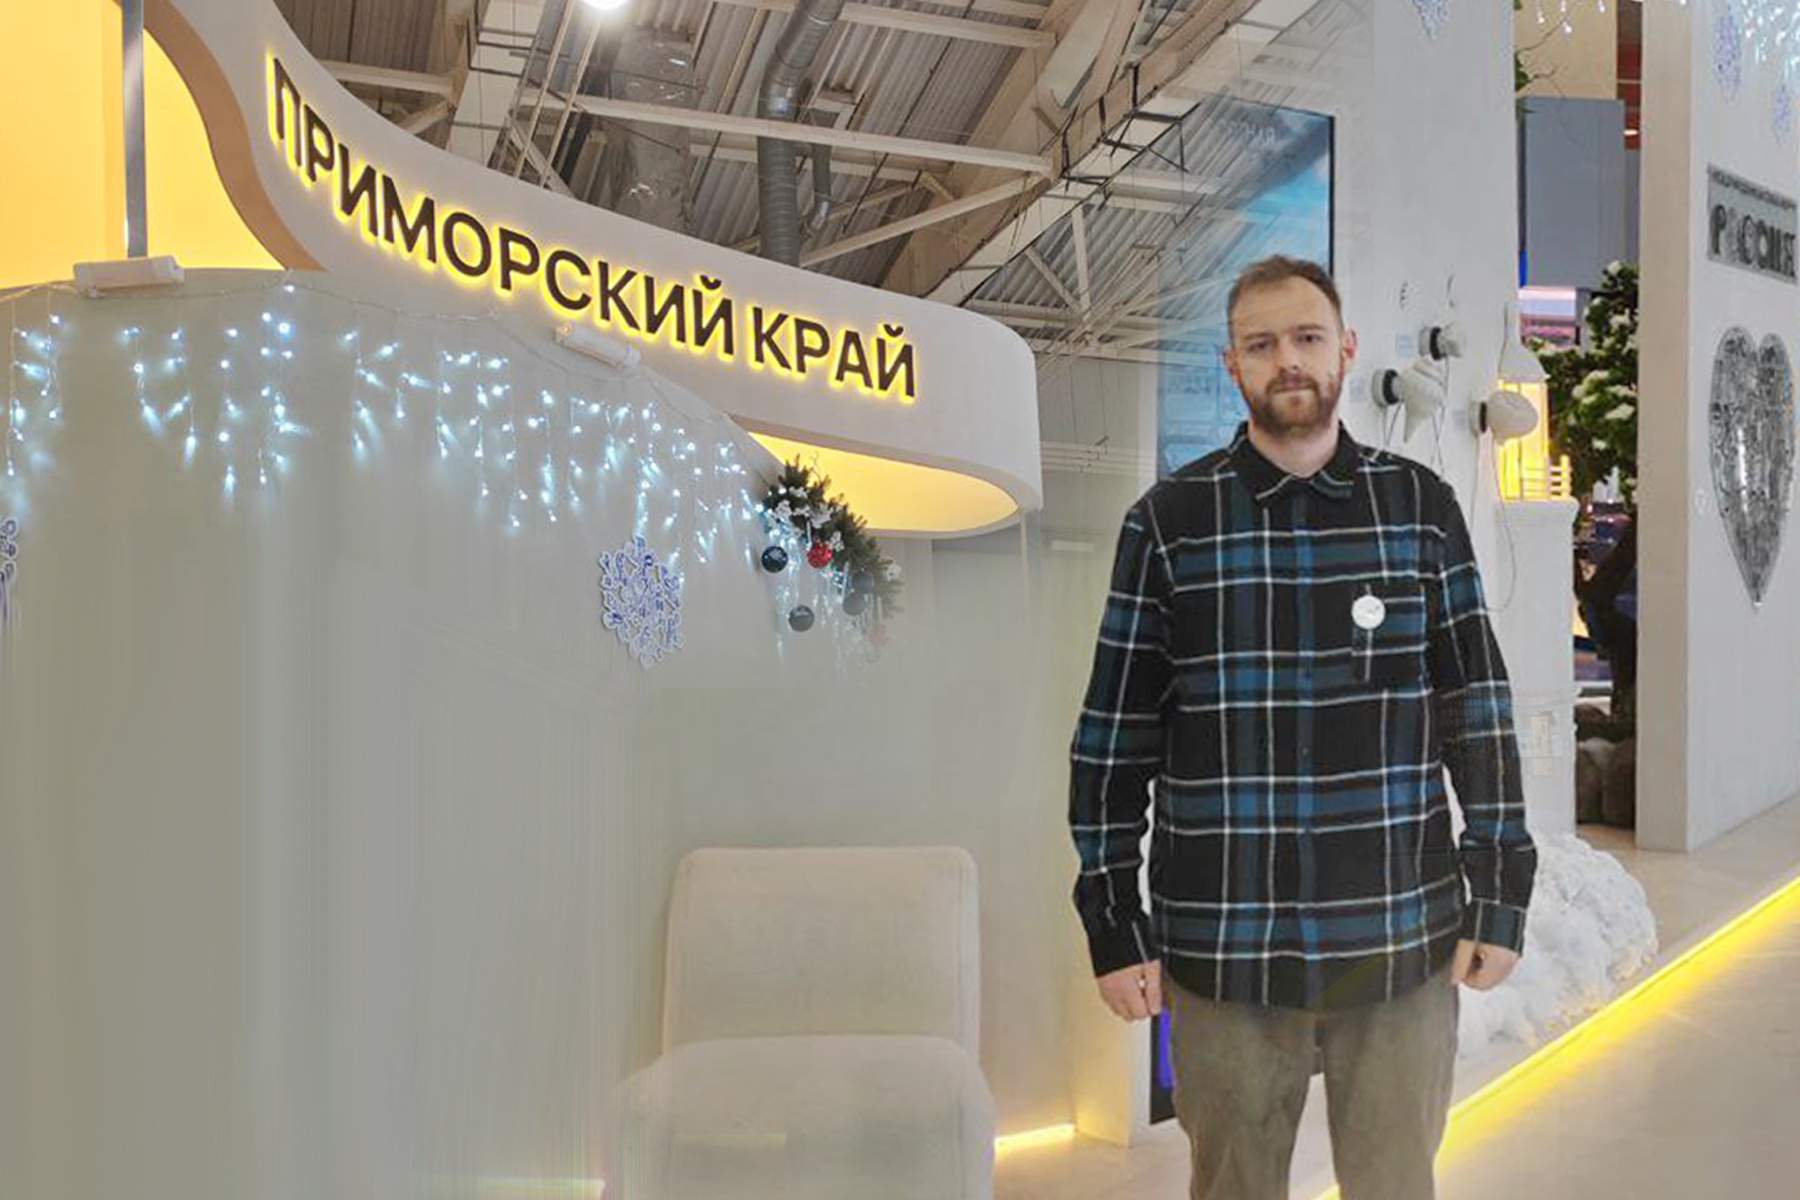 ВВГУ представляет образование Приморского края на Международной выставке в Москве